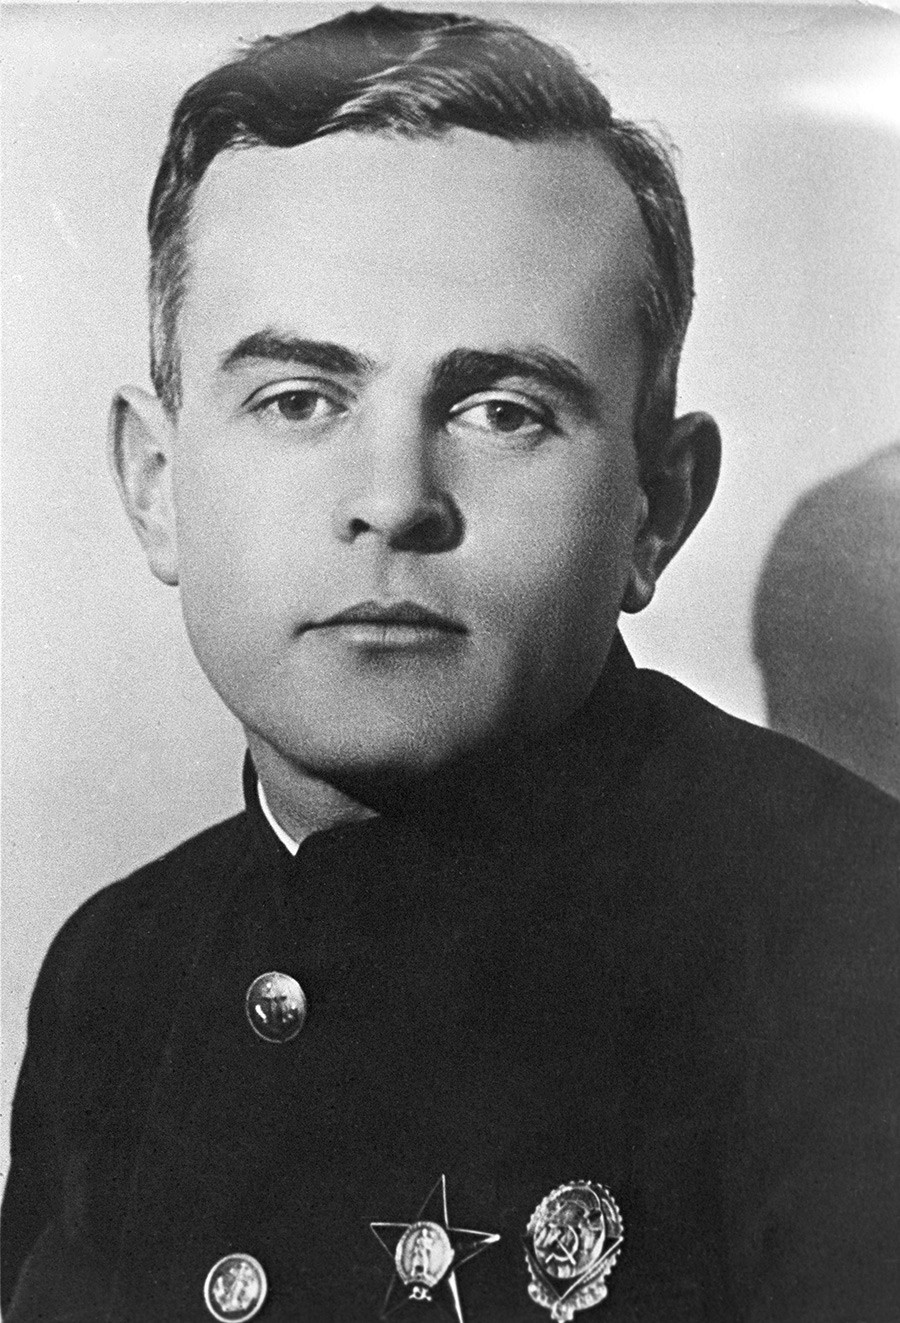 ピョートル・シルショフ。海運人民委員（大臣）、シルショフ記念海洋大学の設立者と最初の学長。